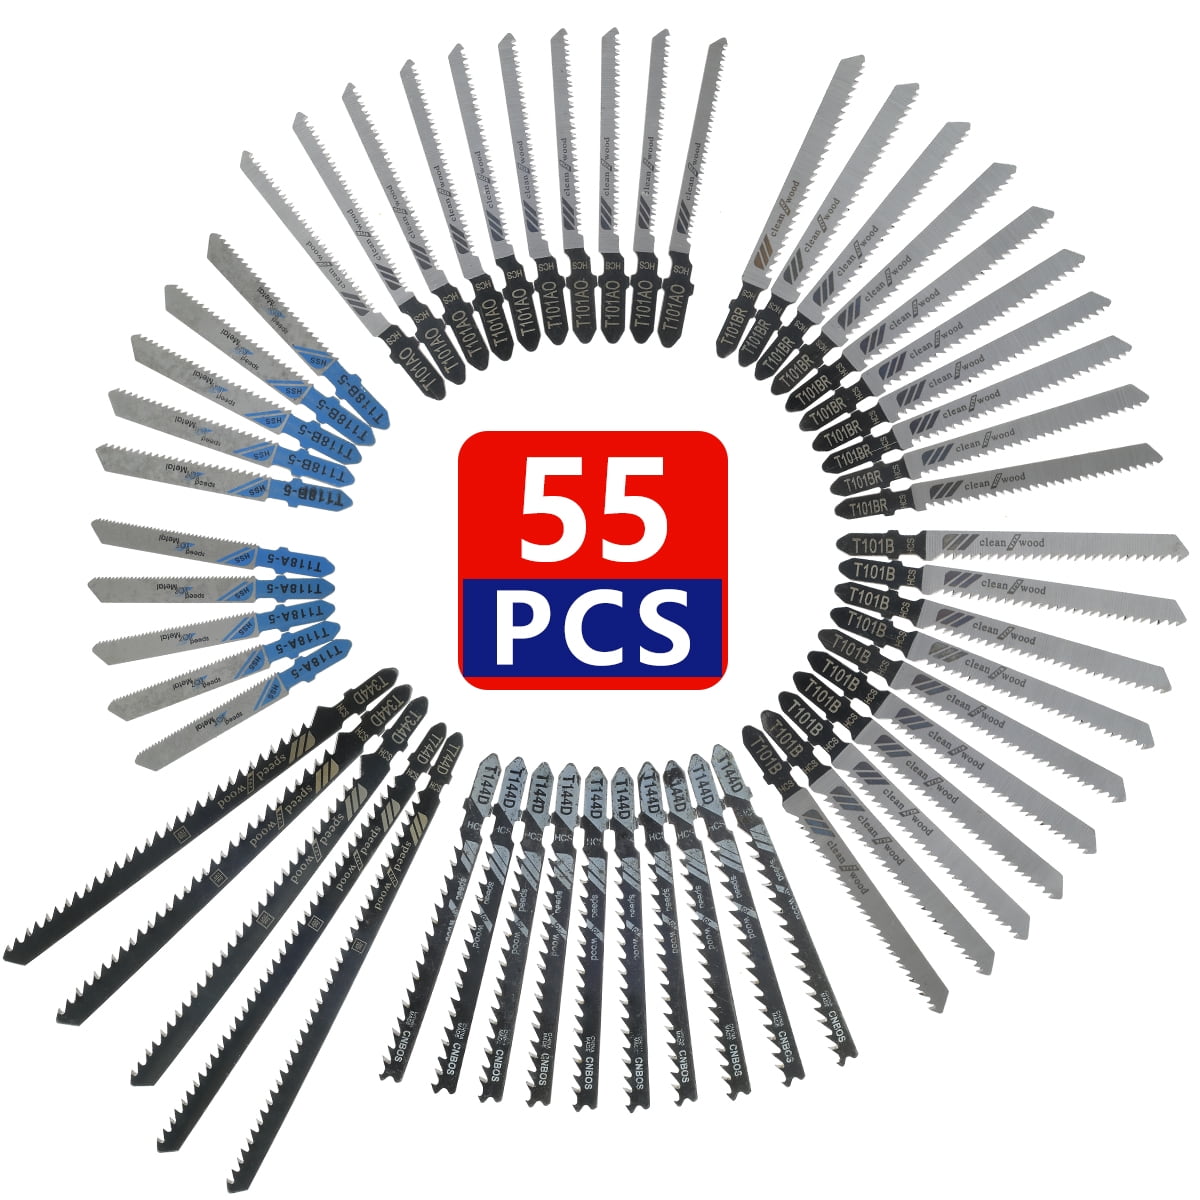 55PCS Assorted T-Shank Jigsaw Blades Set Metal Plastic Wood Jig Saw Cutter Kit 